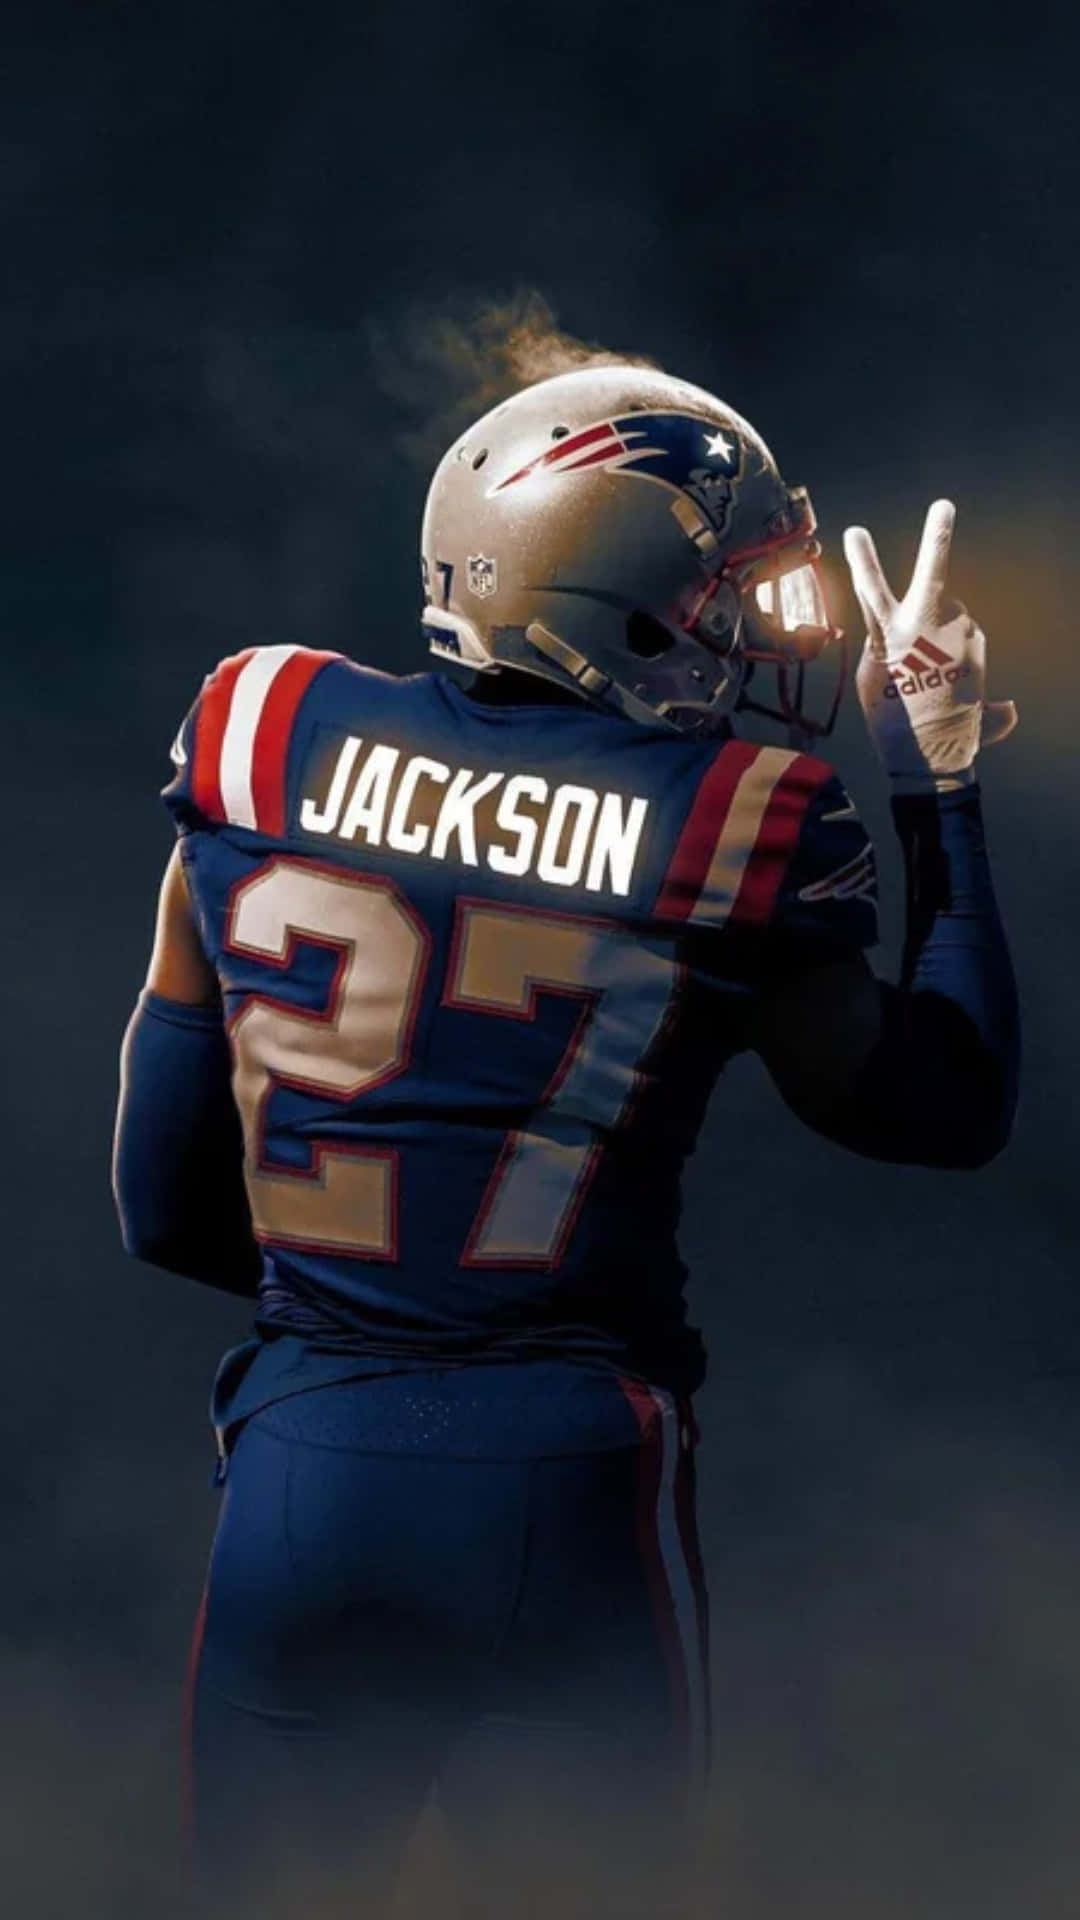 Nuovaarte Digitale Dello Cornerback Dei New England Patriots, Jc Jackson Sfondo